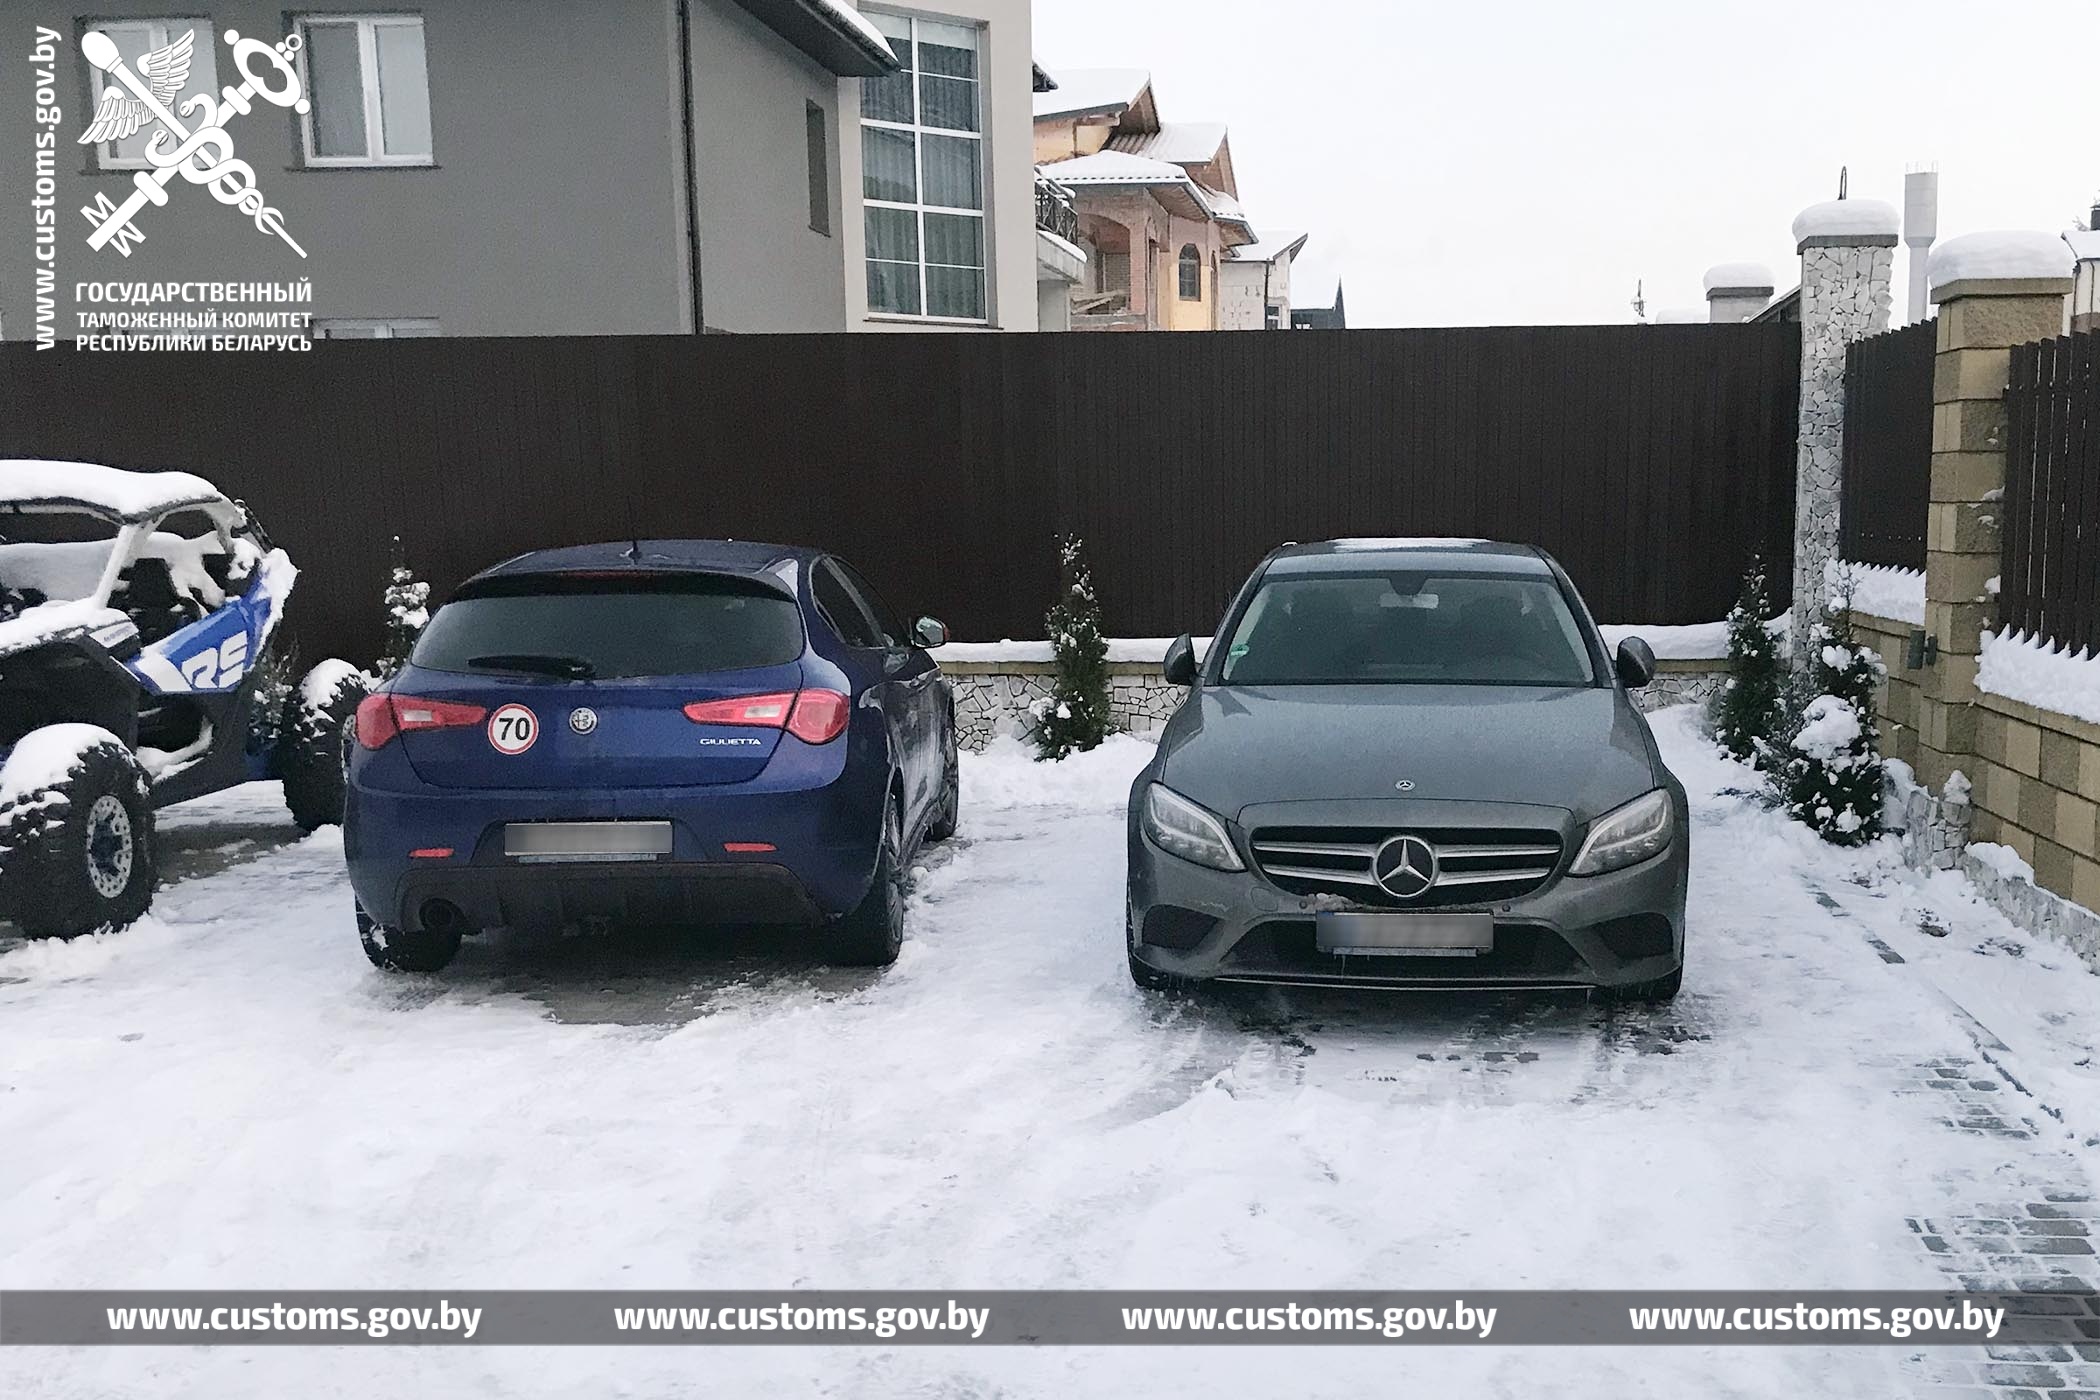 Таможенники пресекли схему перепродажи автомобилей в Россию